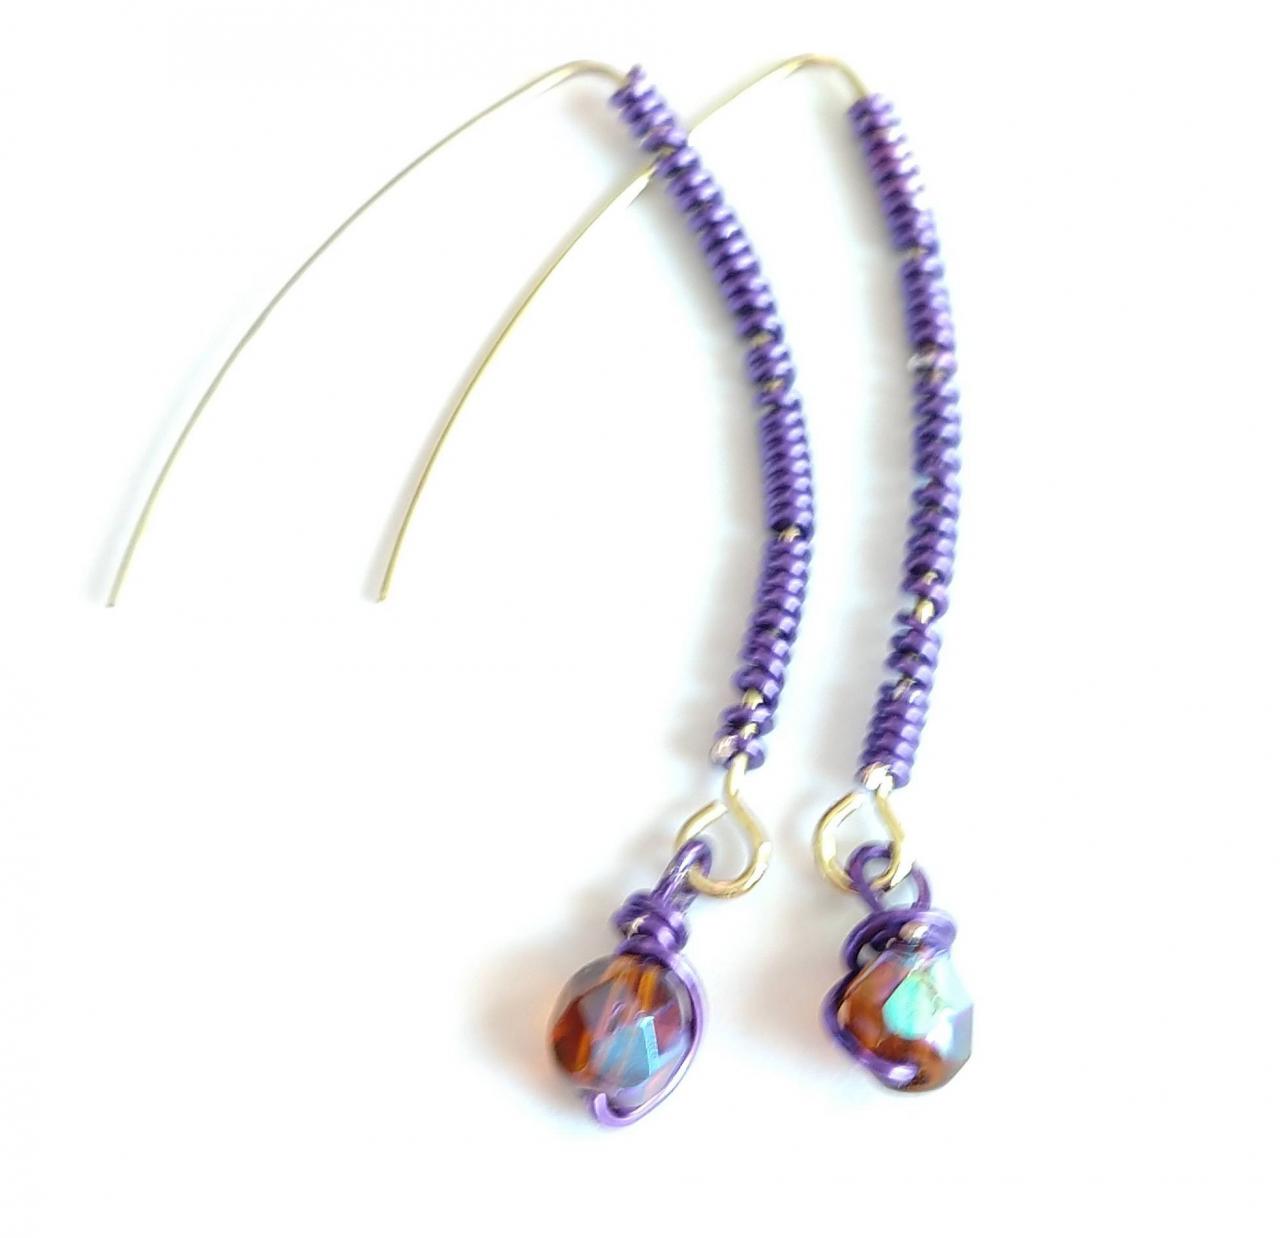 Wire Wrapped Earring Beaded Earring Dangly Earrings Dangle Earrings Dangle And Drop Earrings Festival Earrings Purple Earrings Boho Chic